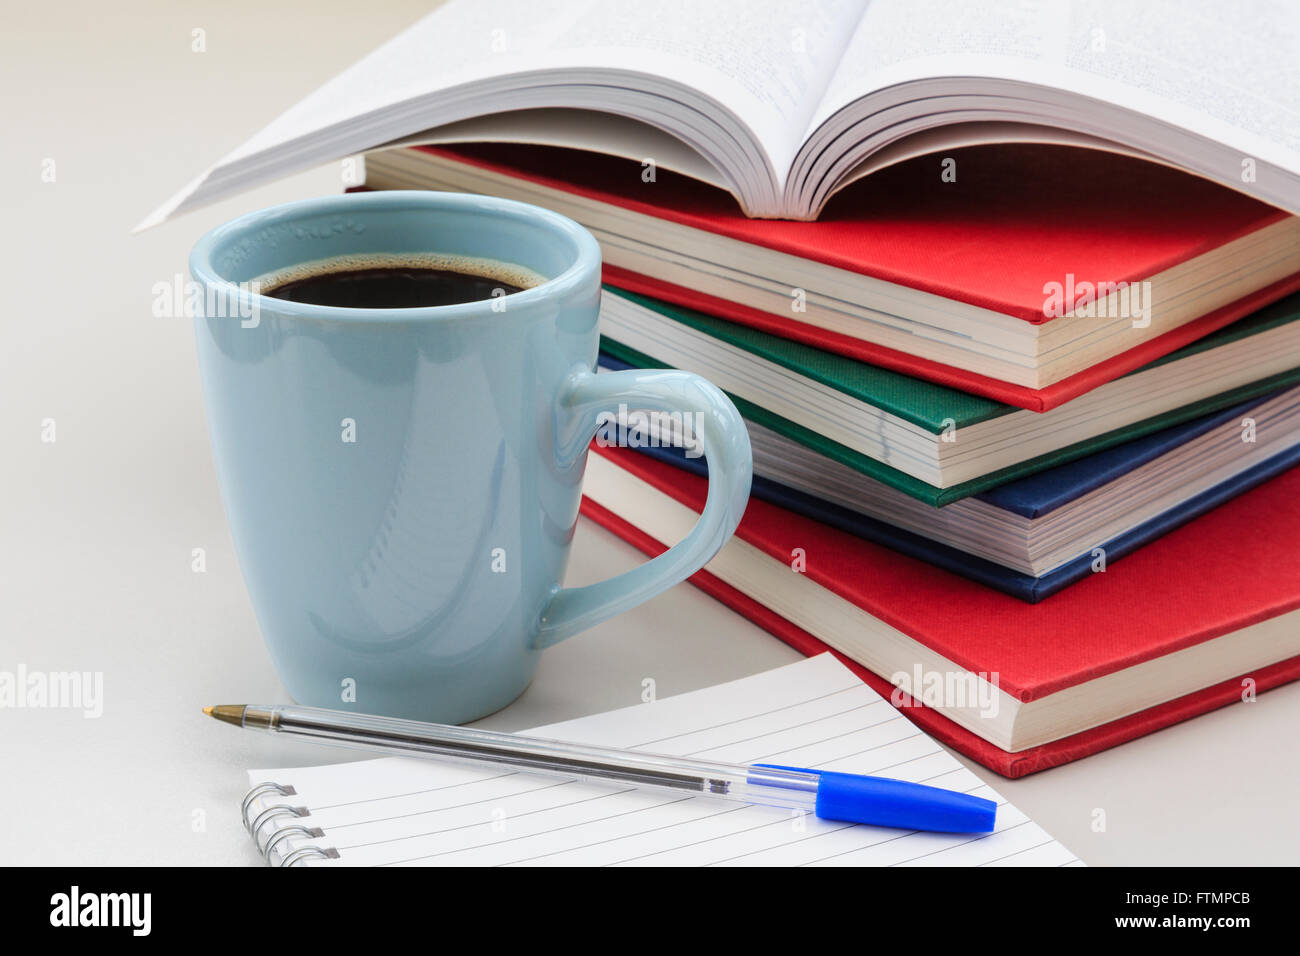 Scène d'études de l'étudiant avec des tas de livres et tasse de café noir fort par un carnet et un stylo sur un bureau de révision pour les examens. Angleterre Royaume-uni Grande-Bretagne Banque D'Images